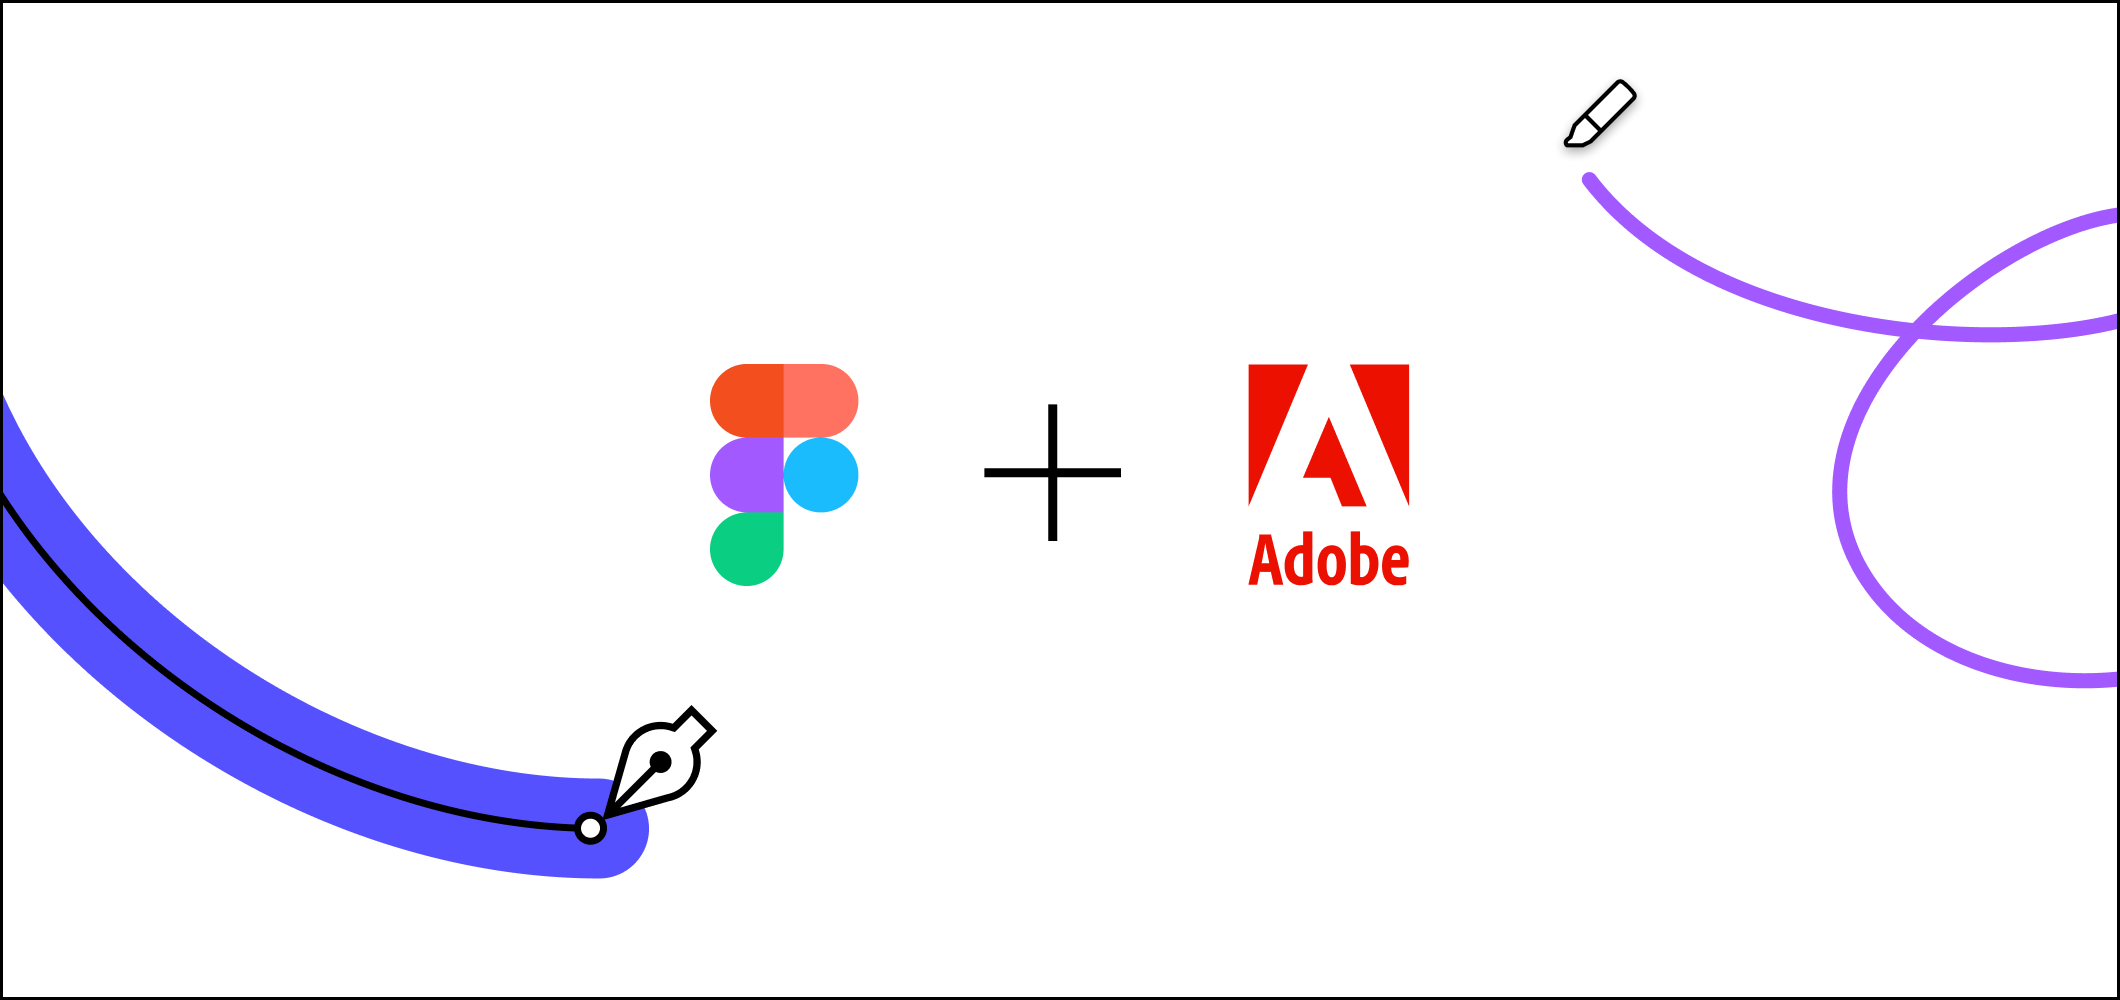 Rachat de Figma par Adobe pour 20 milliards de dollars